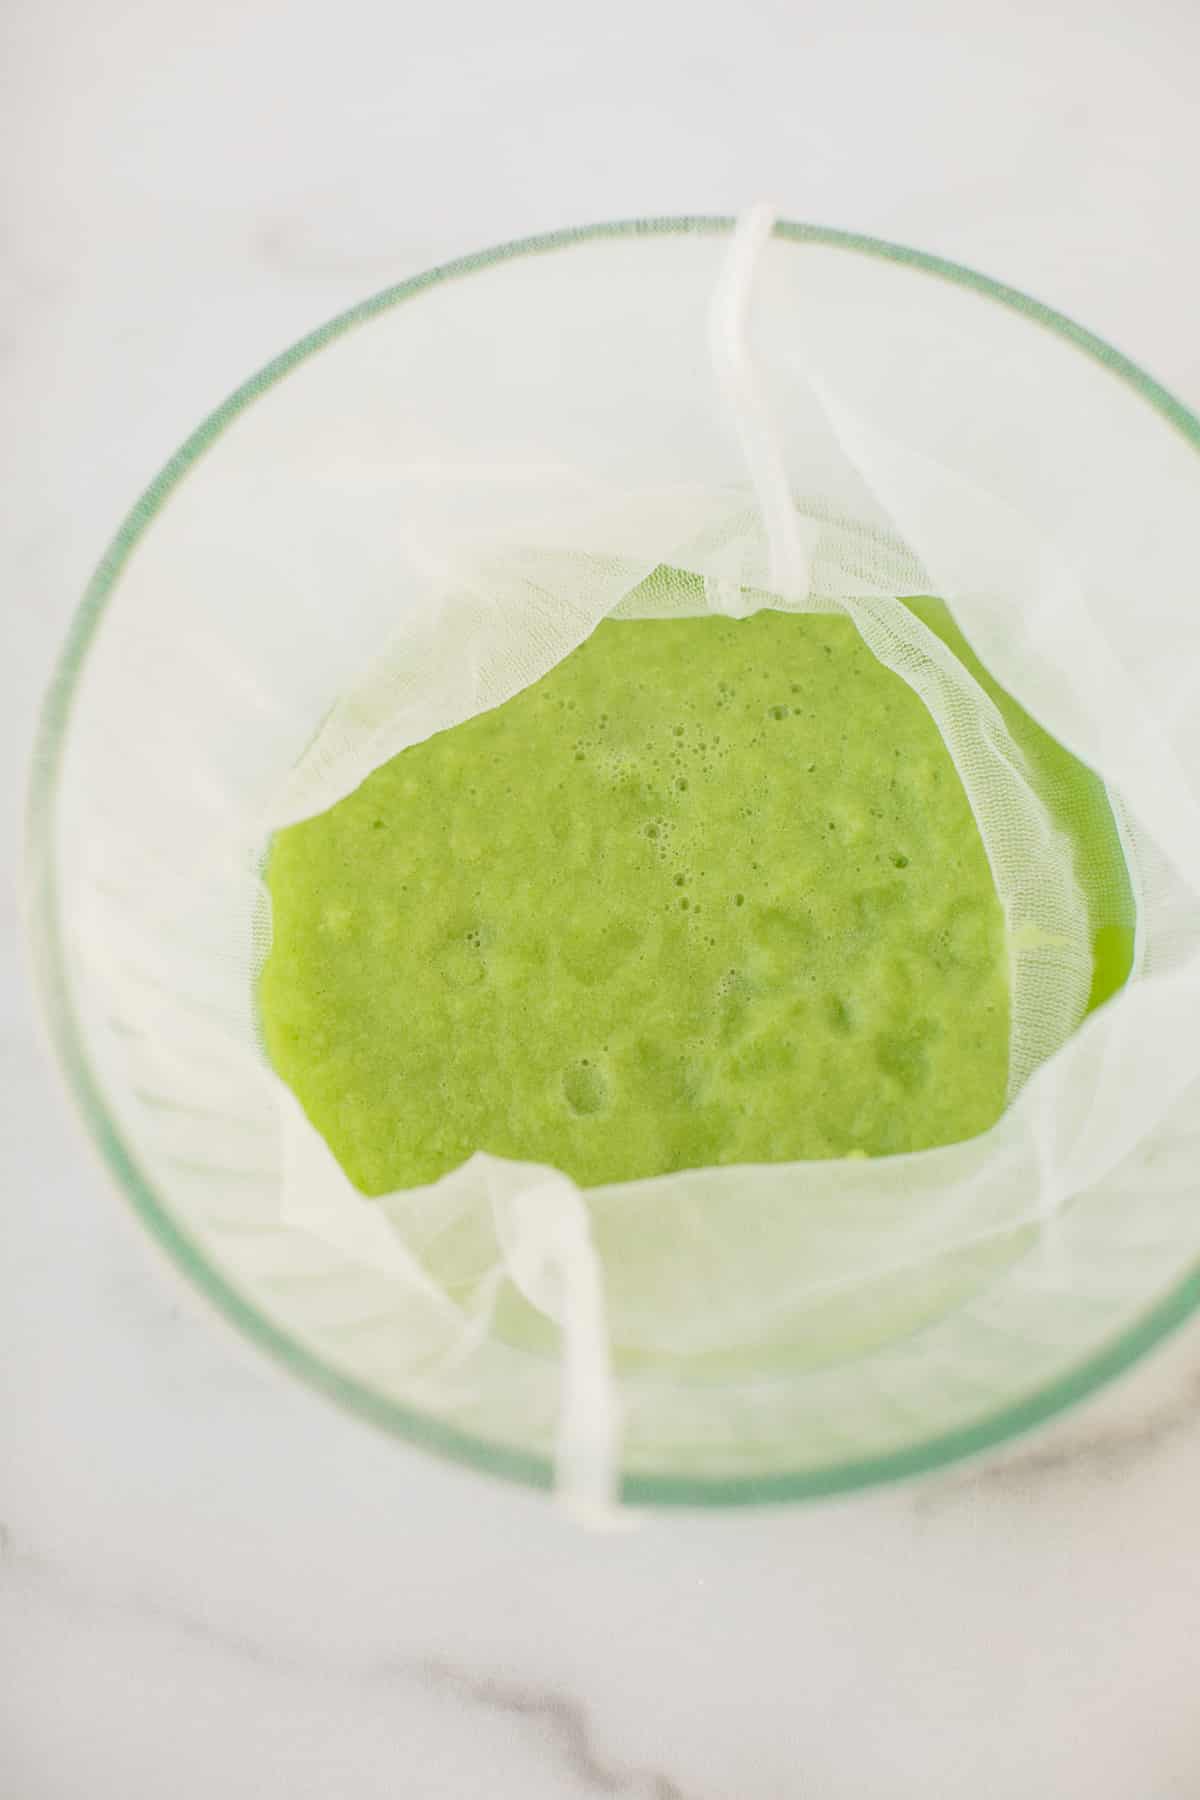 blended celery juice in a nut milk bag